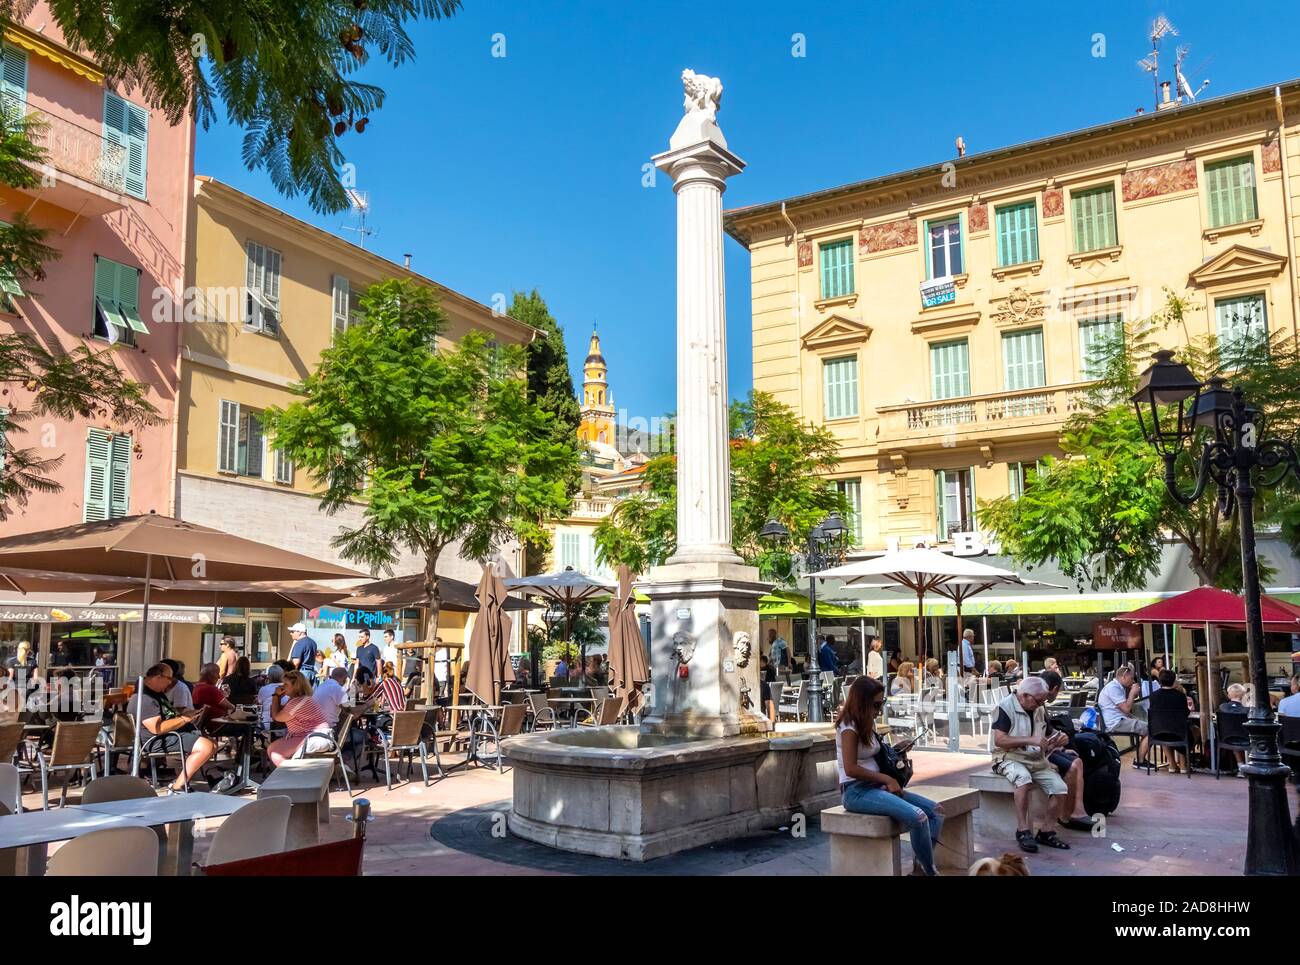 La gente del posto e i turisti godetevi un pomeriggio di sole in una piccola piazza nel centro della città vecchia sezione di Menton, Francia, sulla Riviera Francese. Foto Stock